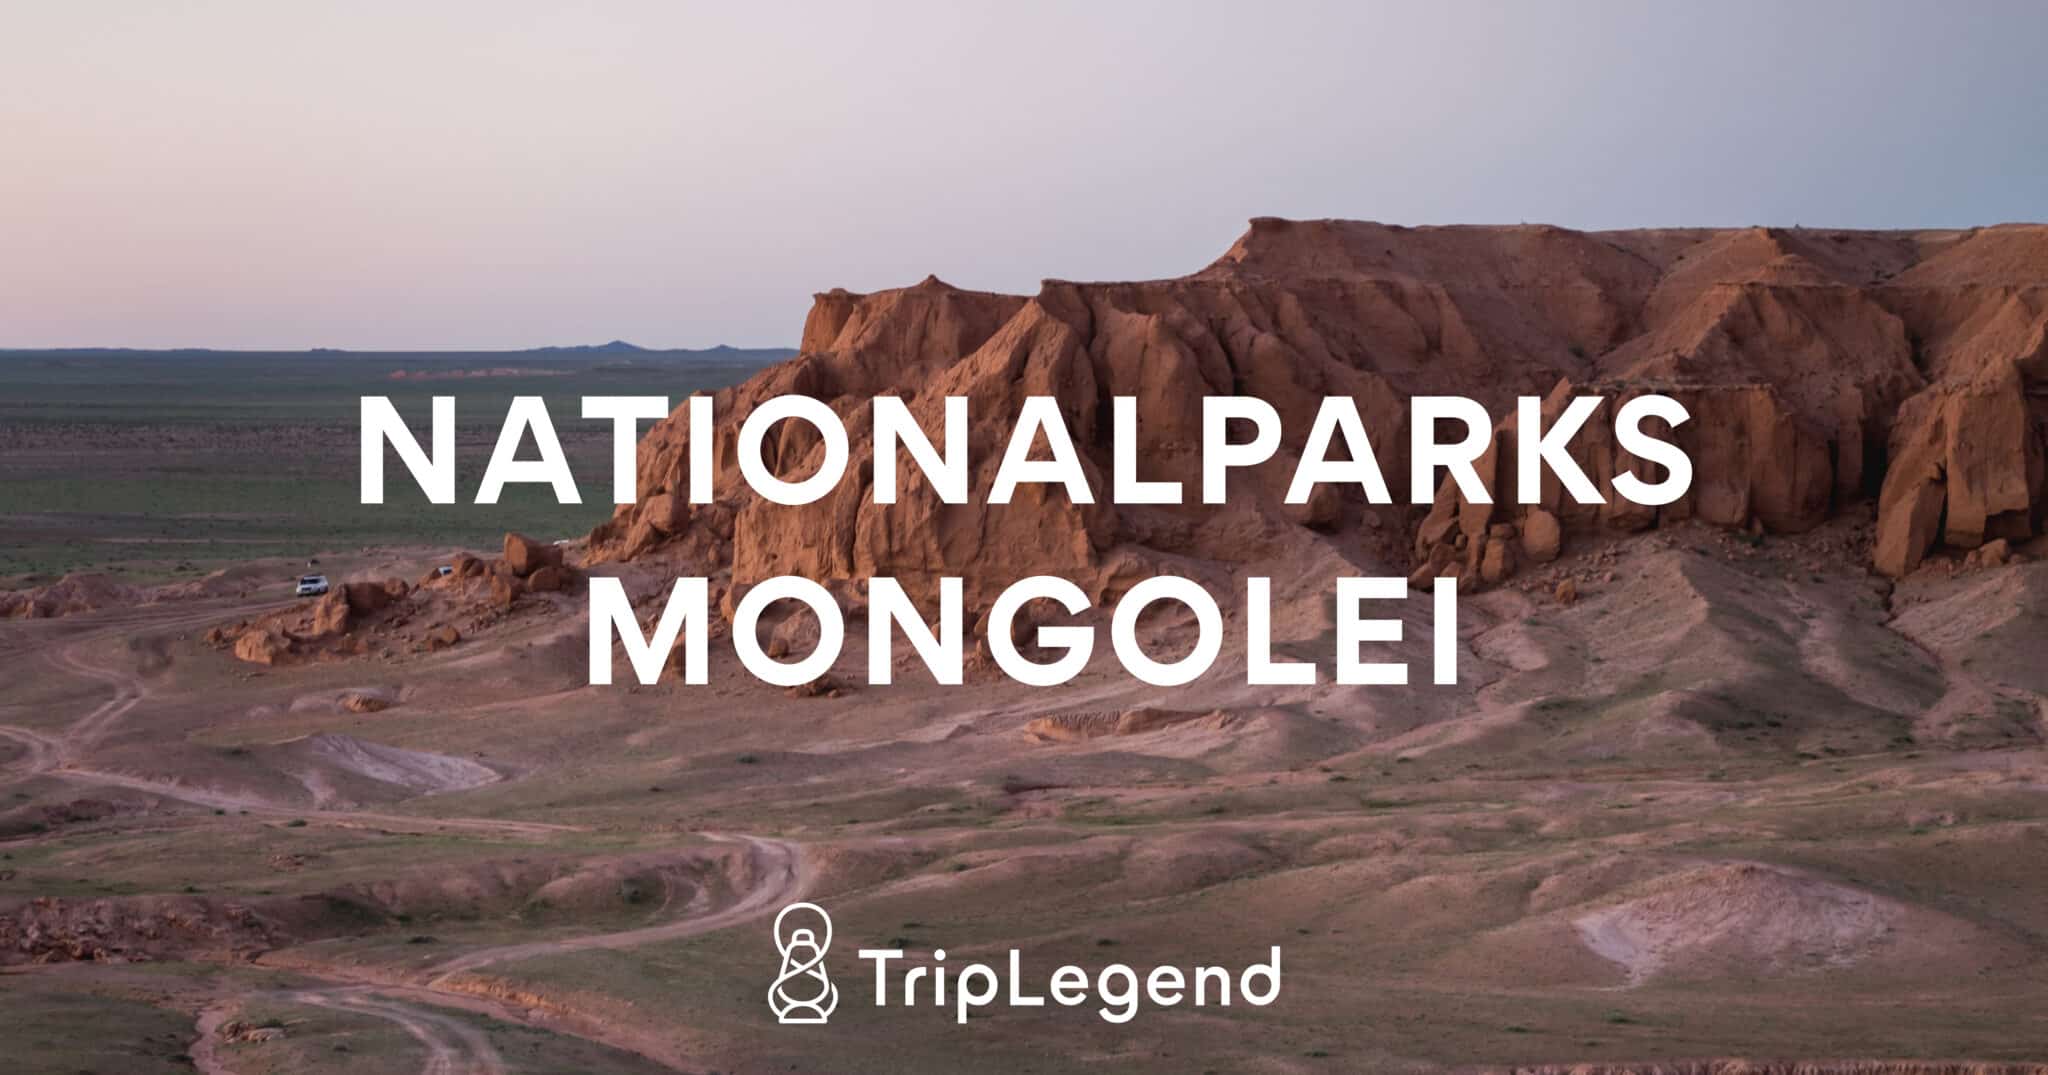 Image de contribution pour l'article sur les parcs nationaux de Mongolie